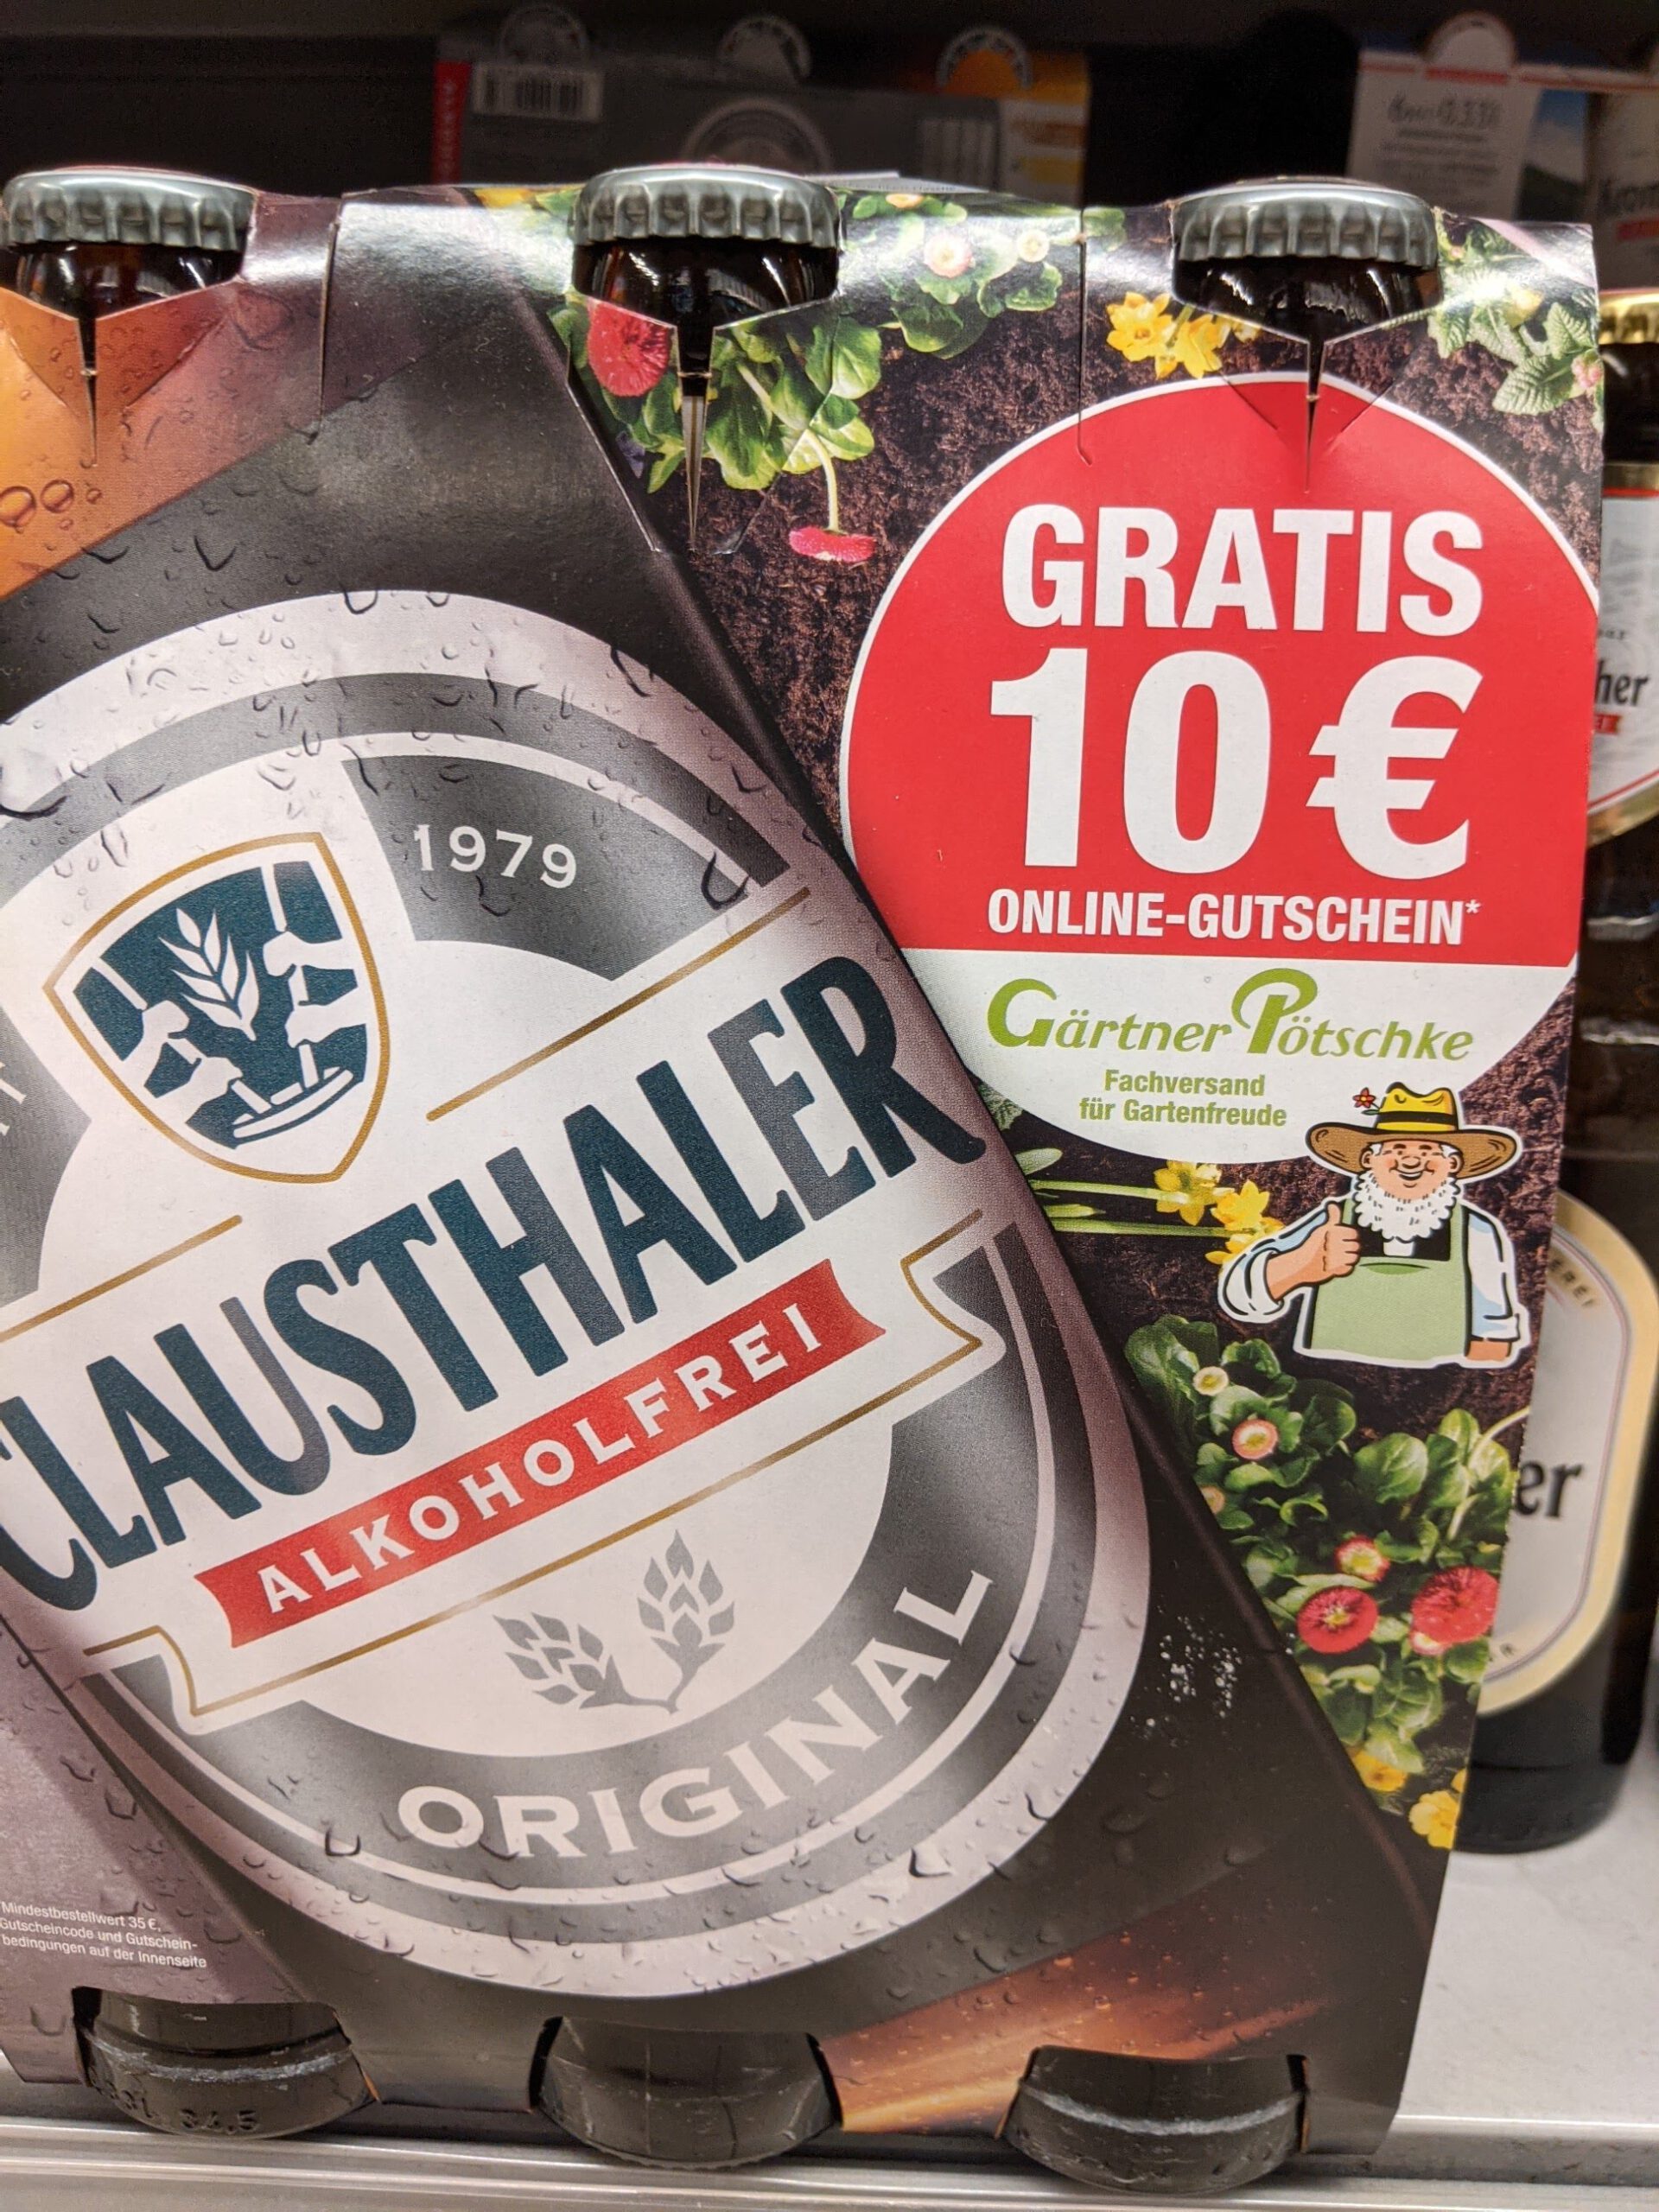 Clausthaler: 10 Euro Gutschein Code für Gärtner Pötschke gratis